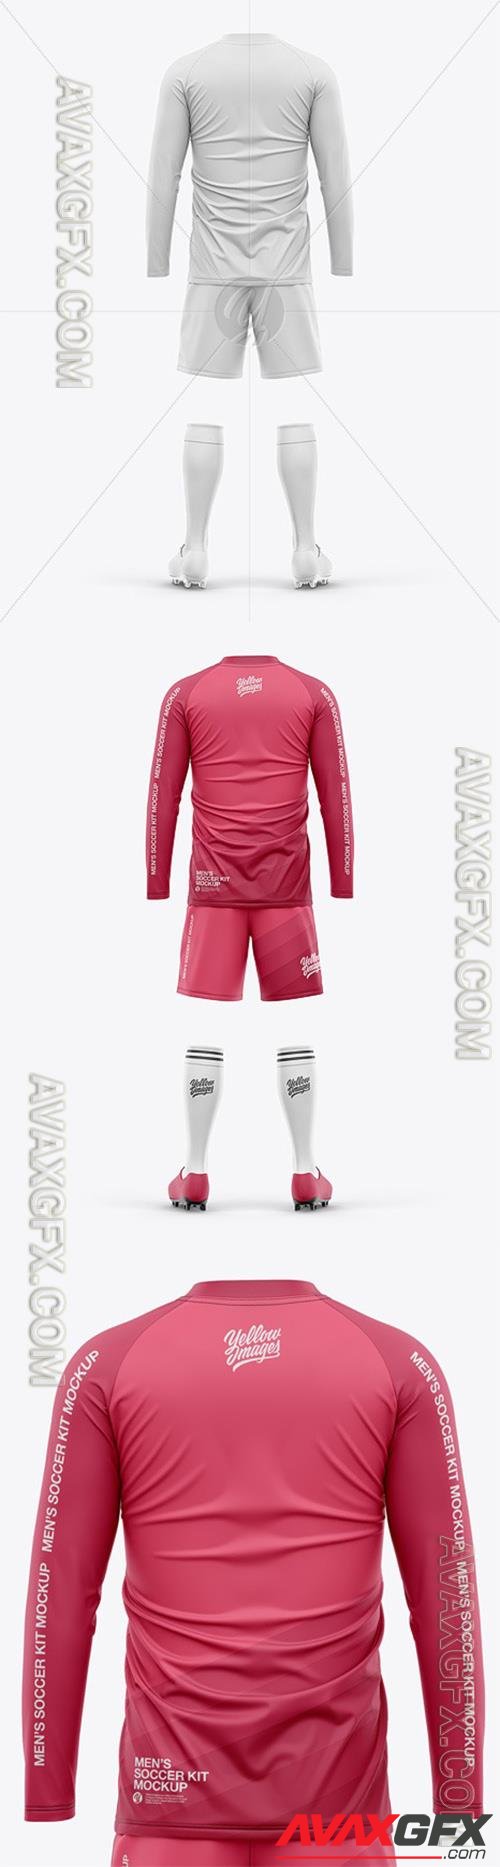 Full Soccer Kit - Long Sleeve Raglan Jersey 92948